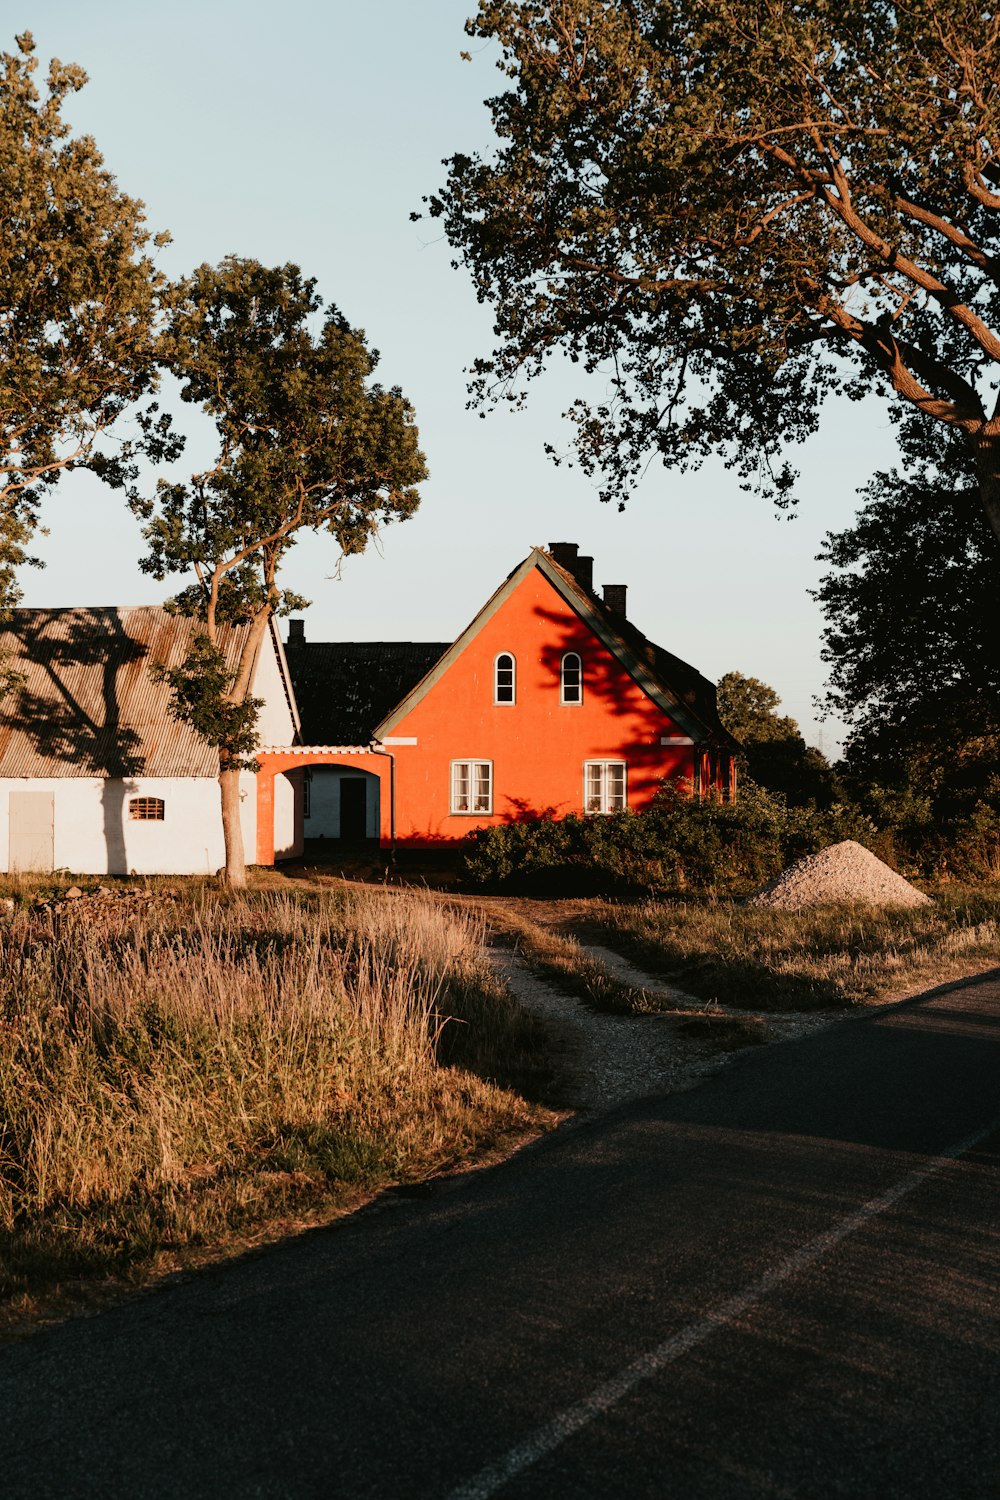 Casa laranja com telhado preto ao lado da casa branca com telhado marrom